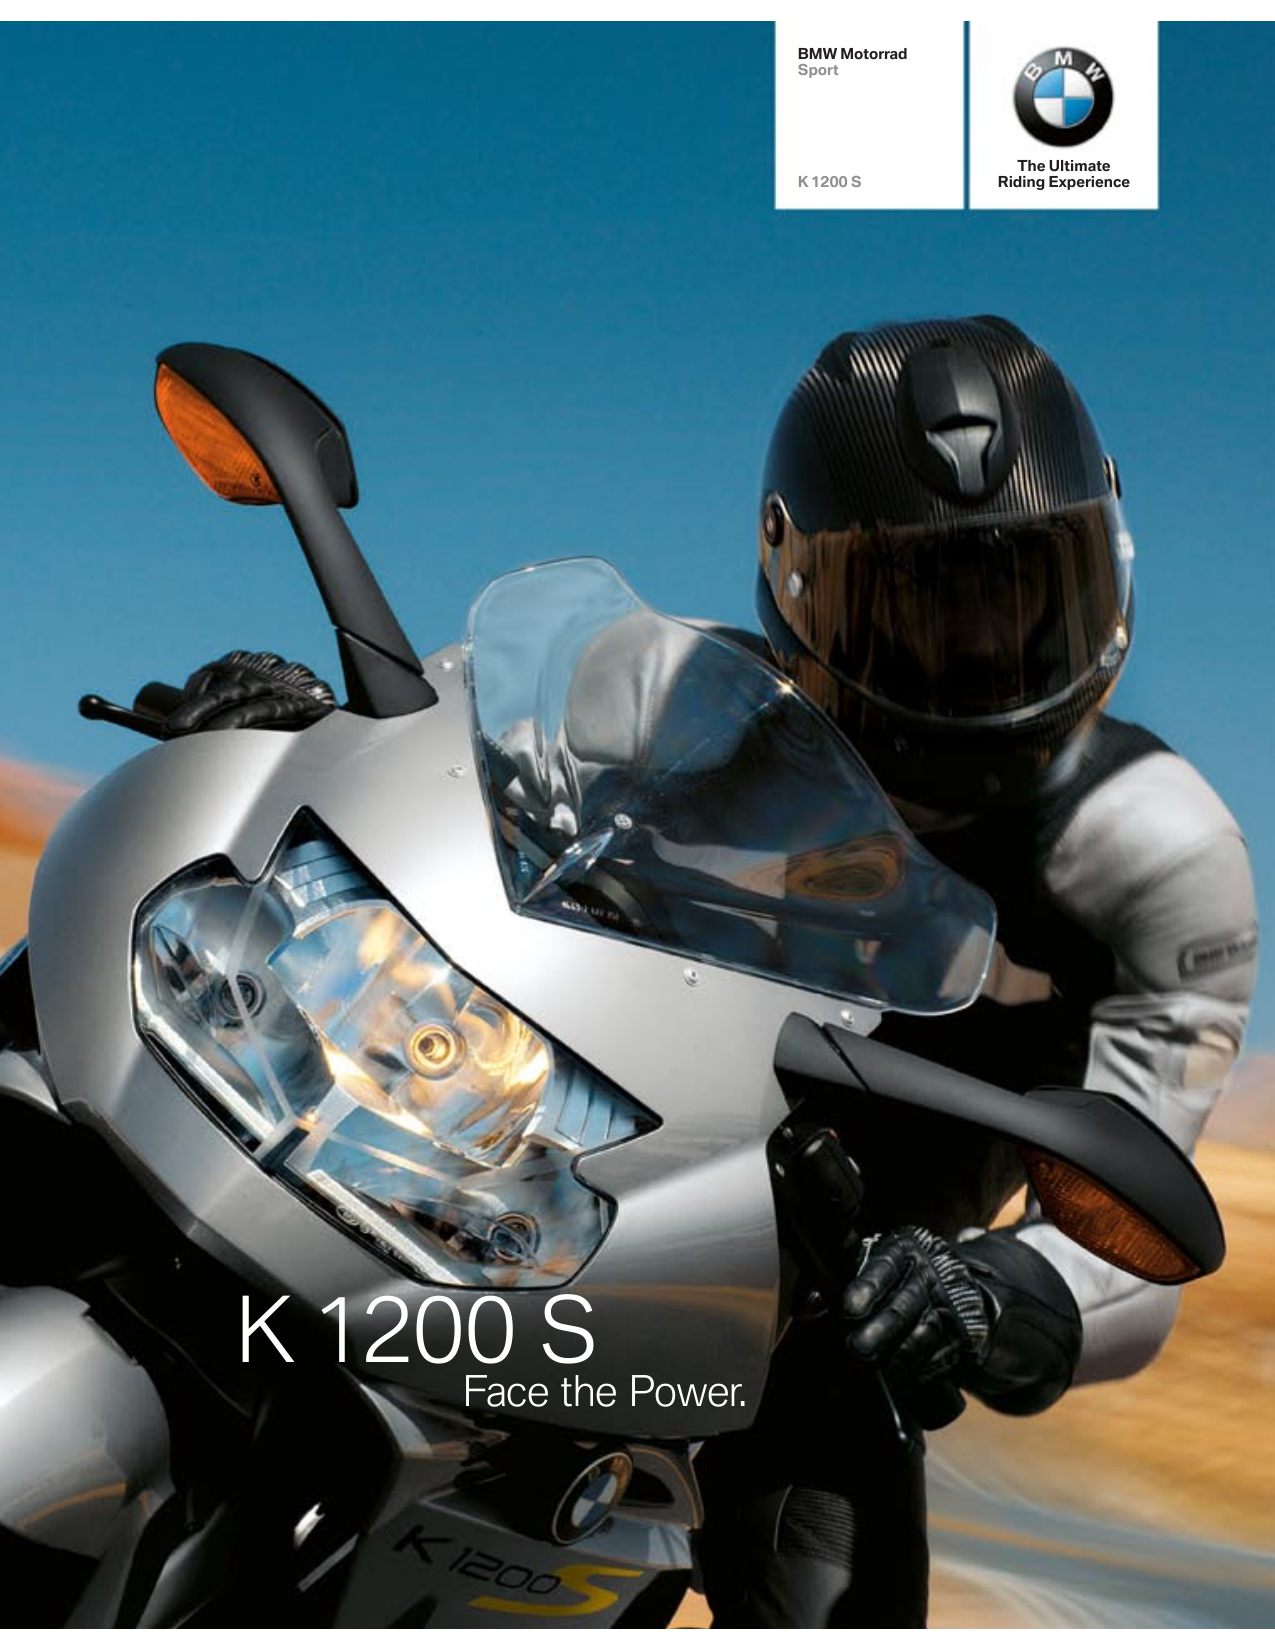 Bmw k 1200 s folleto 8/05 2005 motocicleta folleto folleto brochure folheto moto 